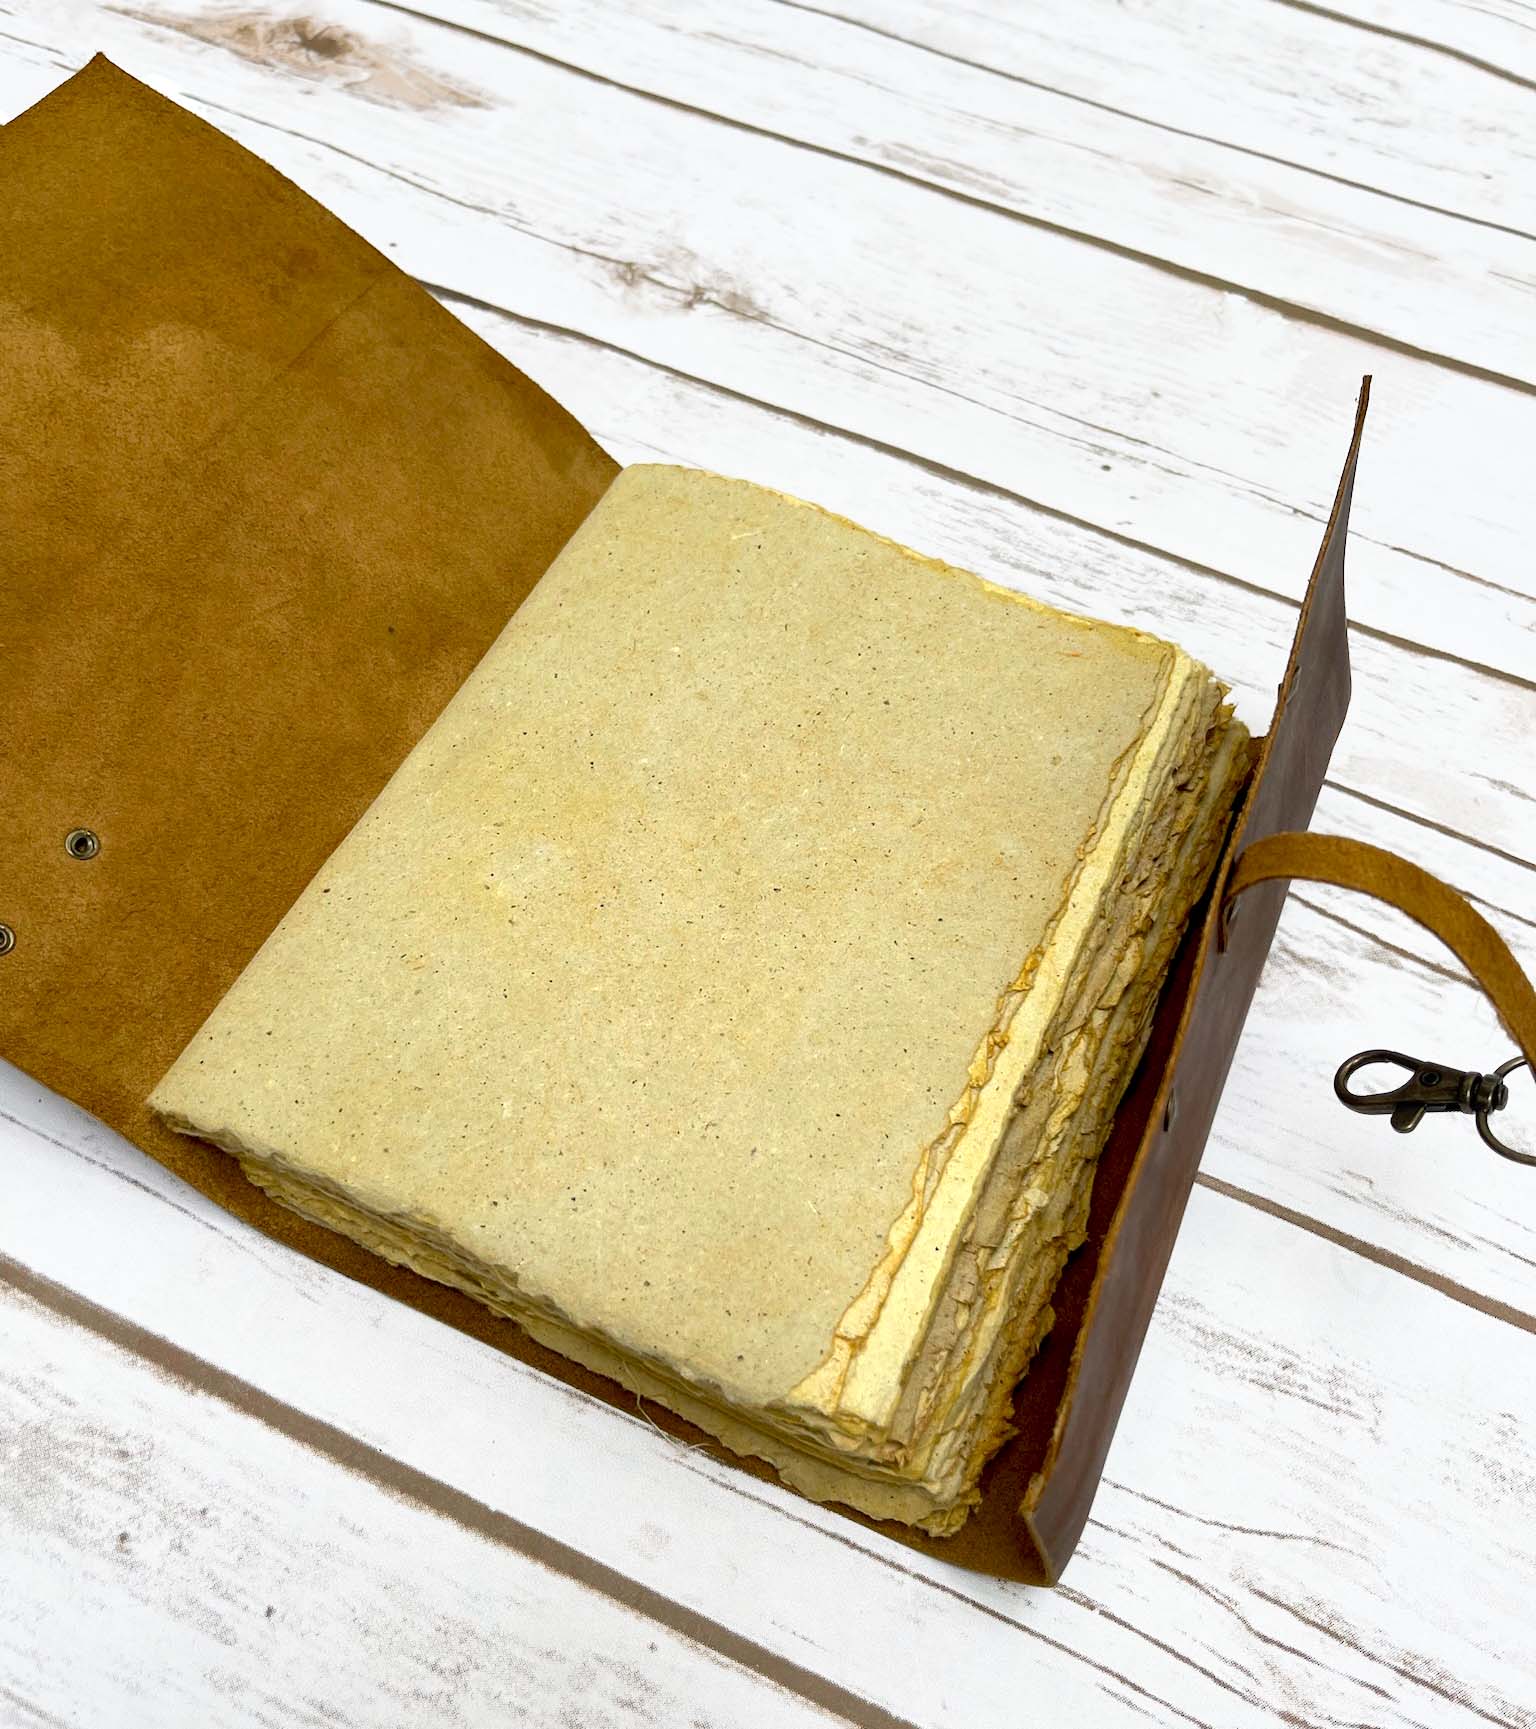 Lock Vintage Handmade Leather Journal